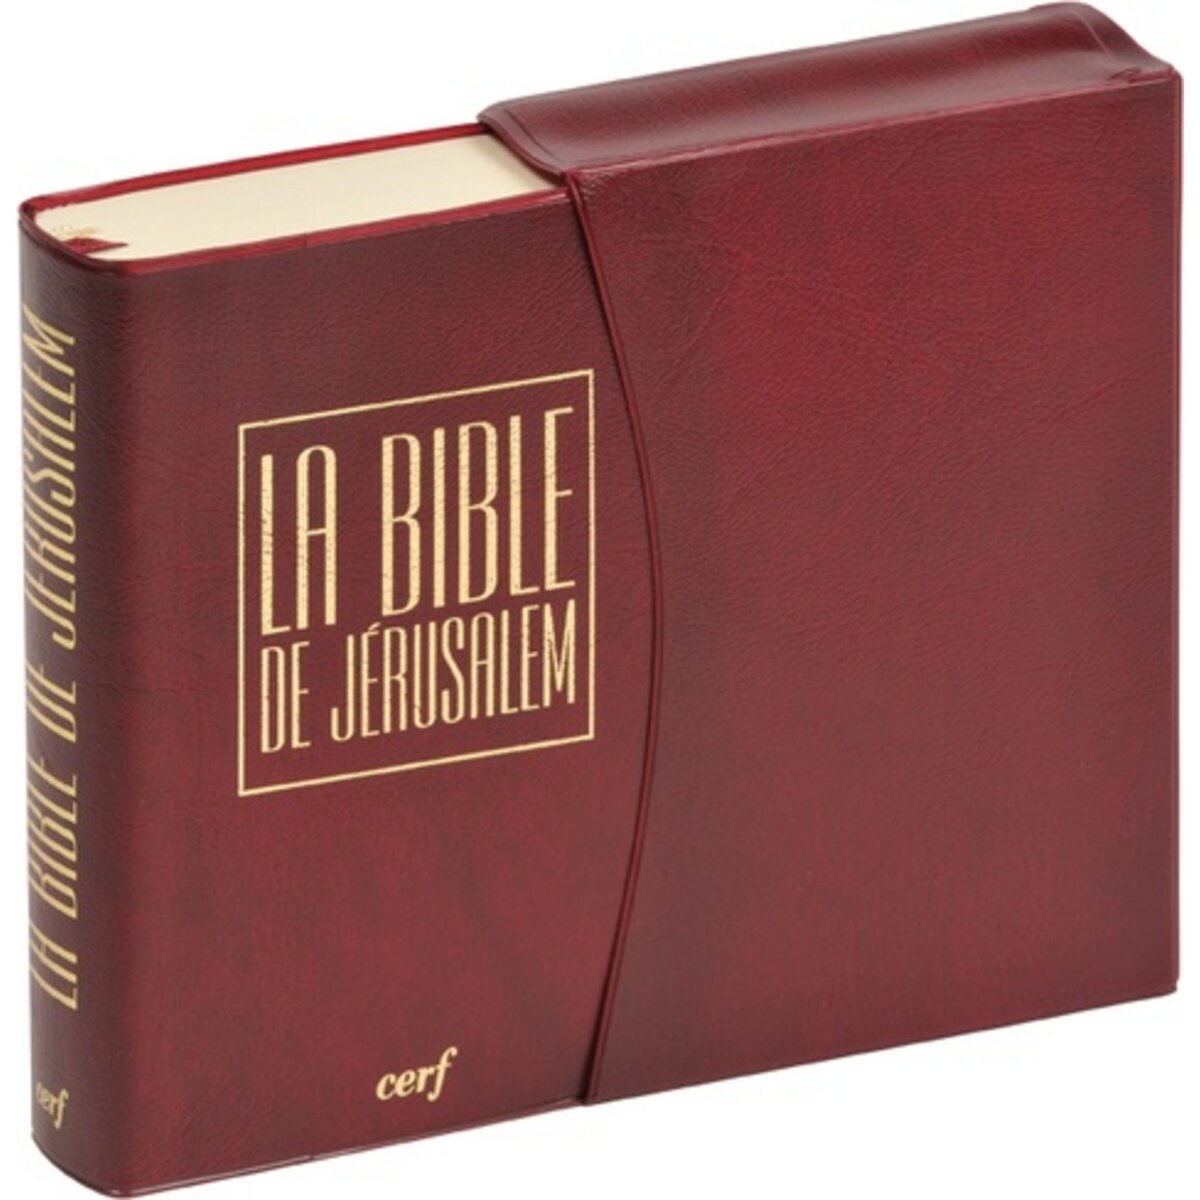 LA BIBLE DE JERUSALEM. EDITION PVC BORDEAUX, Ecole biblique de Jérusalem  pas cher 